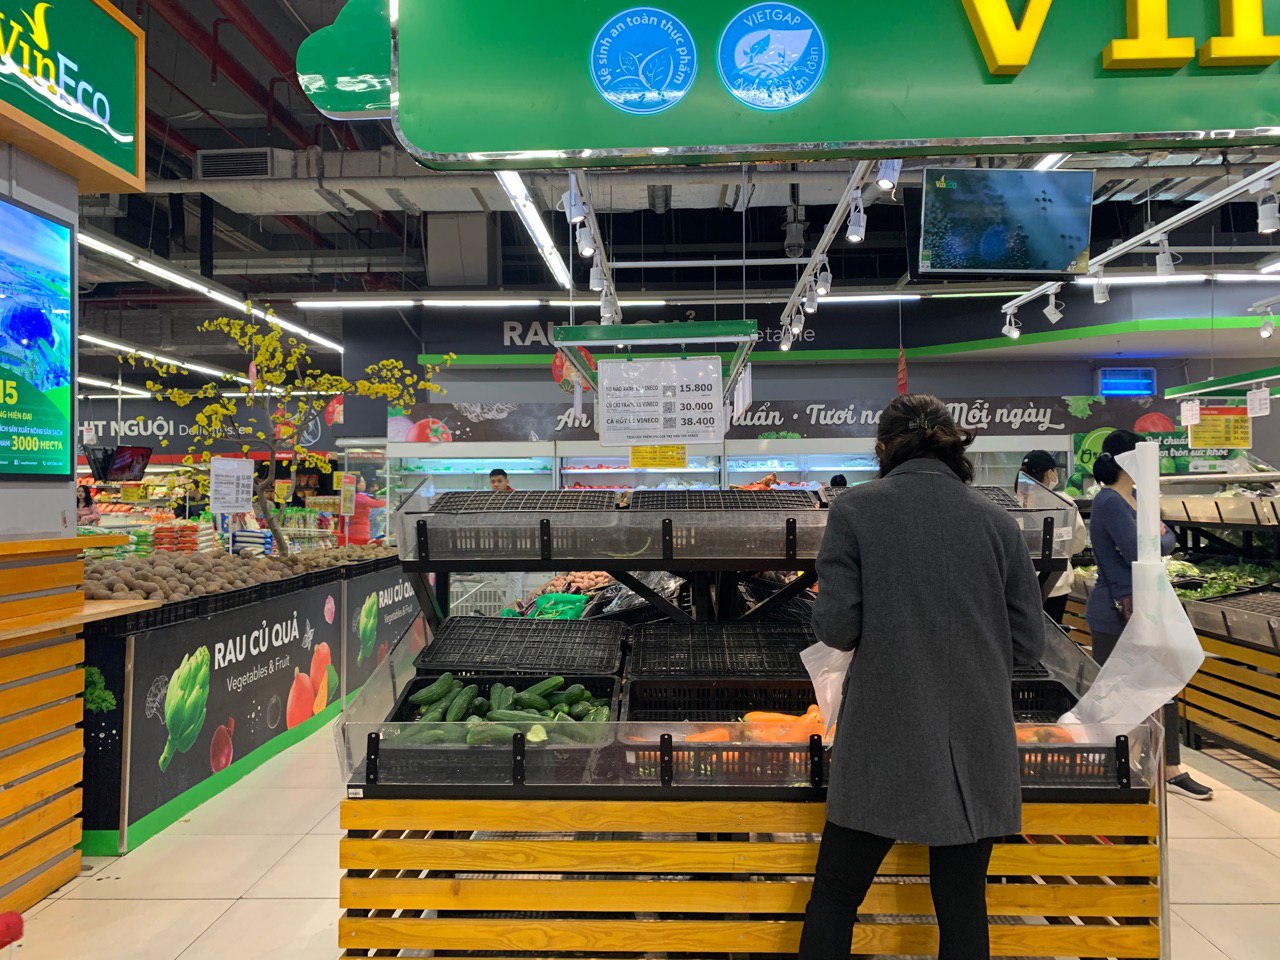 Giới trẻ &quot;mê&quot; siêu thị hơn chợ: Văn hóa mua bán đậm chất Việt có thể phai nhạt dần? - Ảnh 3.